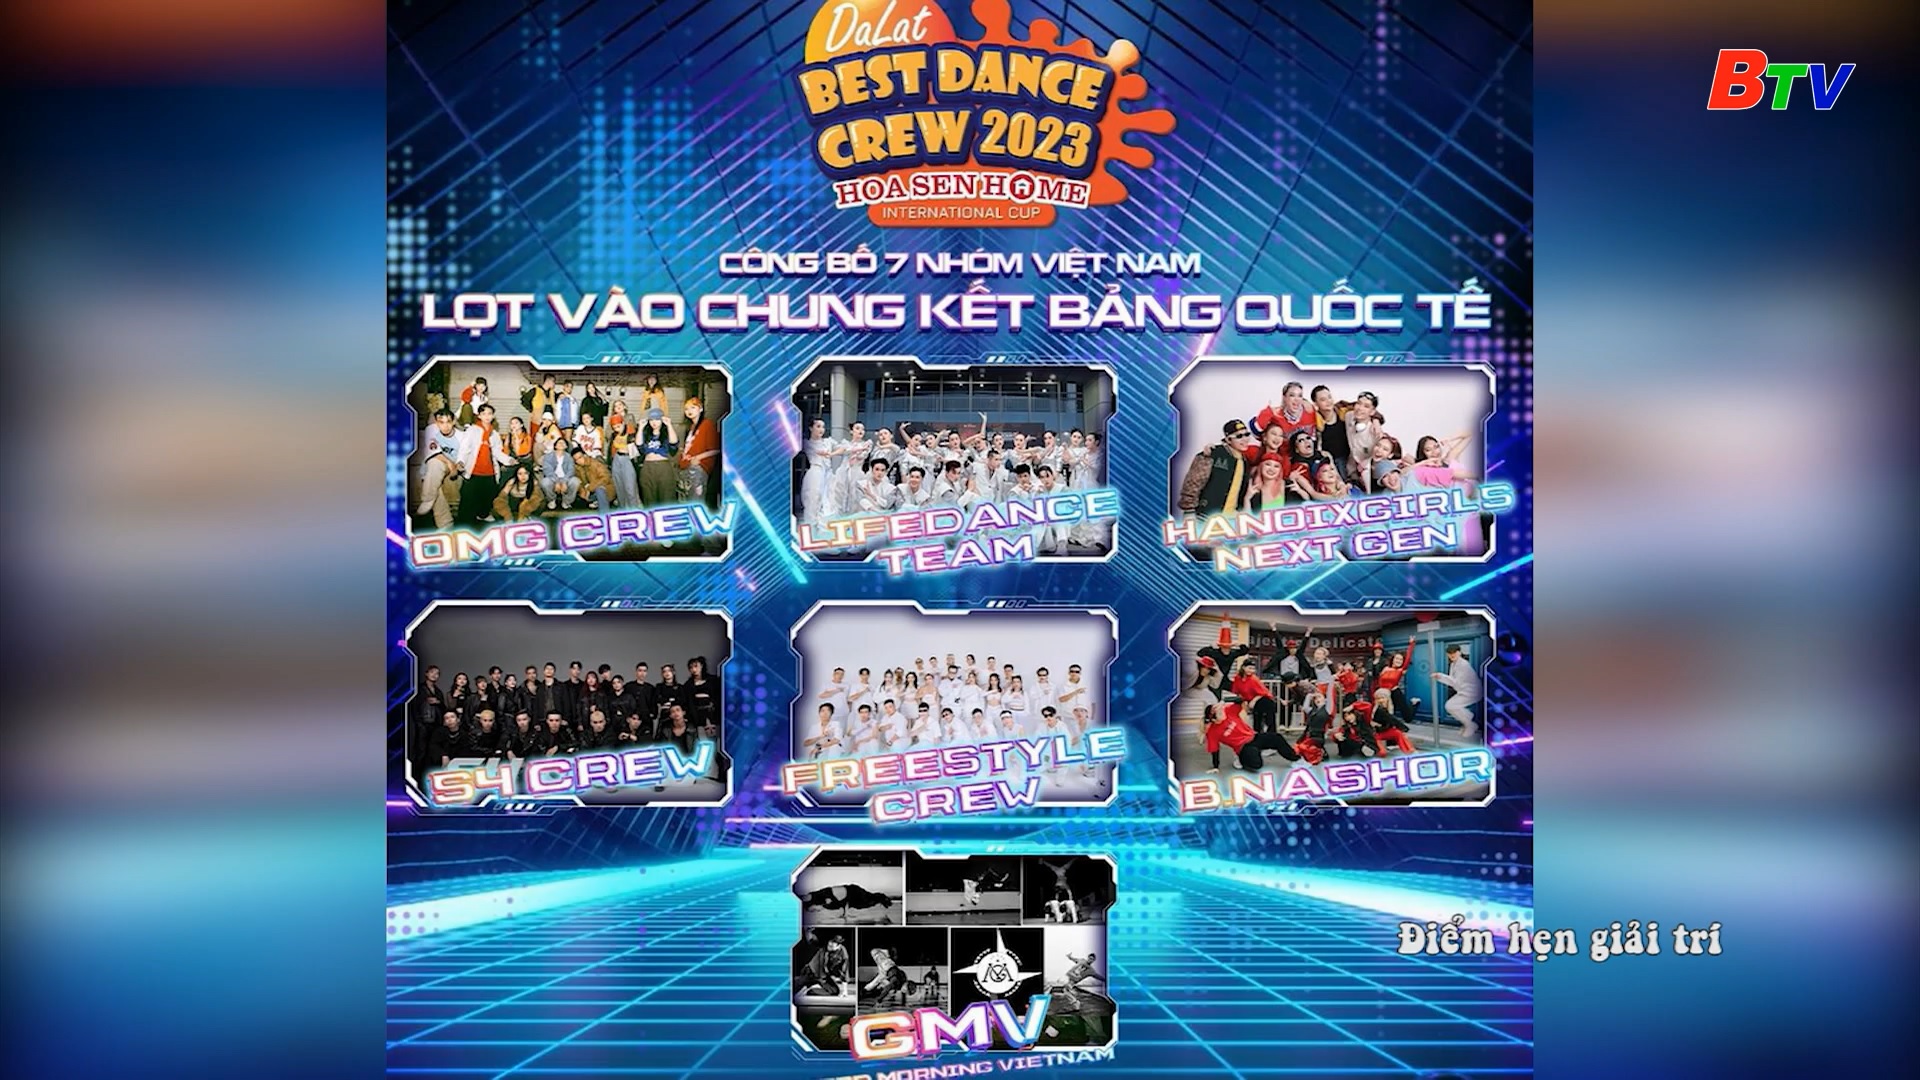 Công bố 7 nhóm nhảy lọt vào chung kết cuộc thi Dalat Best Dance Crew